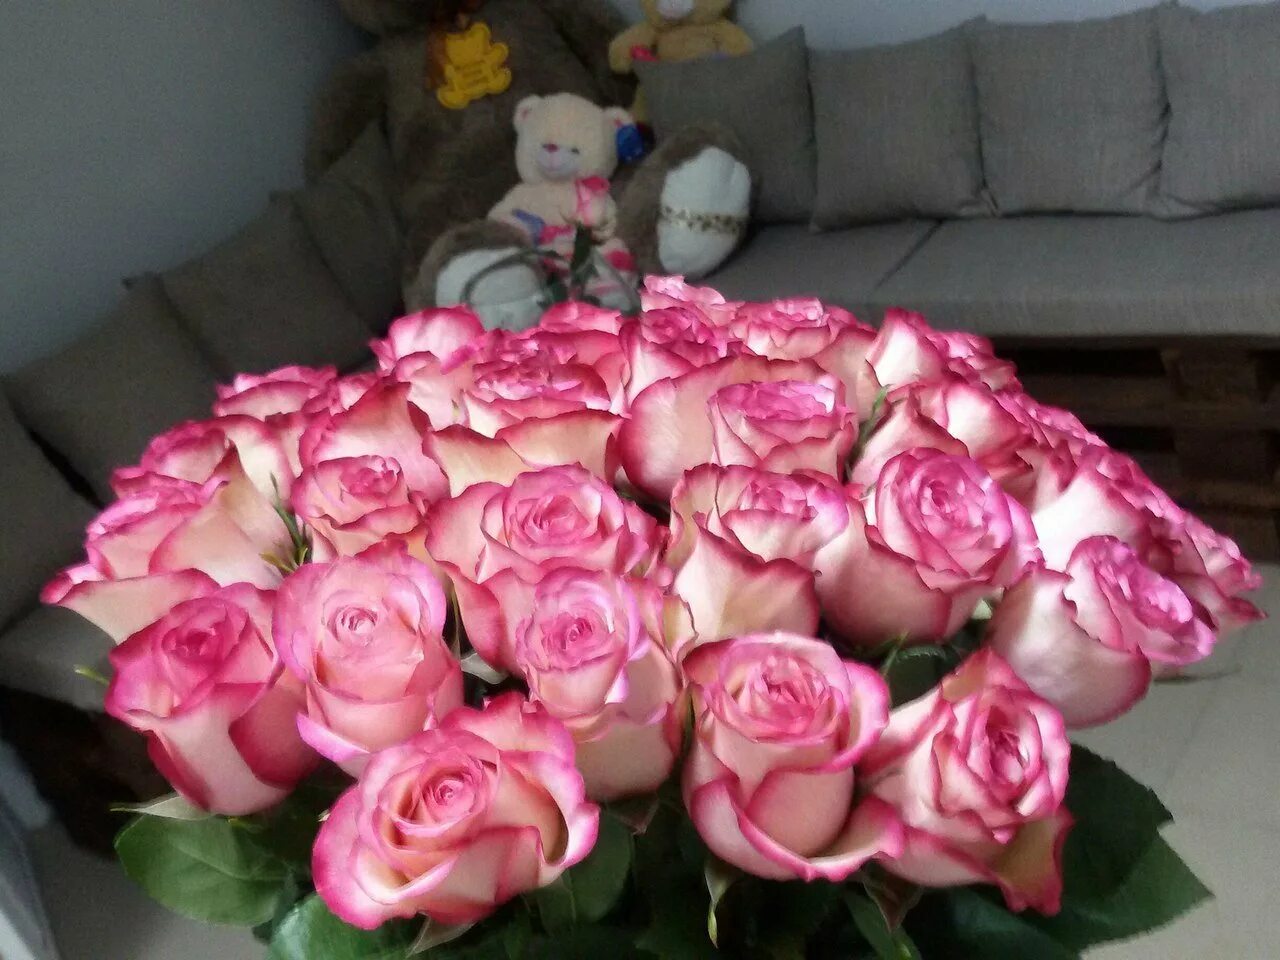 Фото реальных букетов цветов дома. Красивый букет дома. Букет роз в домашней обстановке. Красивый букет роз на кровати. Букет роз дома.